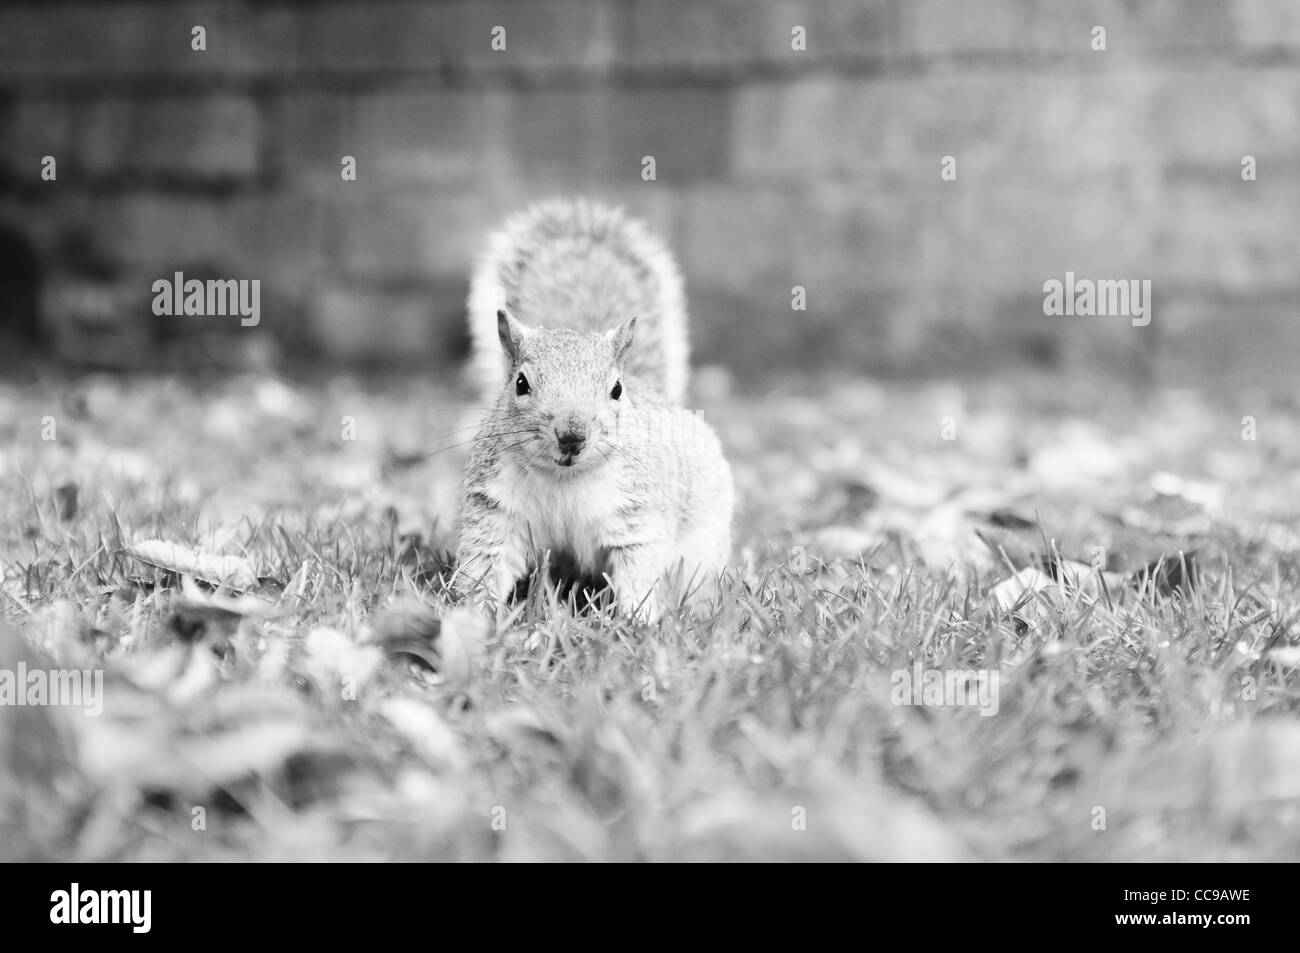 Eine geringe Tiefe Feld Monotone Fotografie eines Eichhörnchens suchen etwas hinter der Kamera Stockfoto